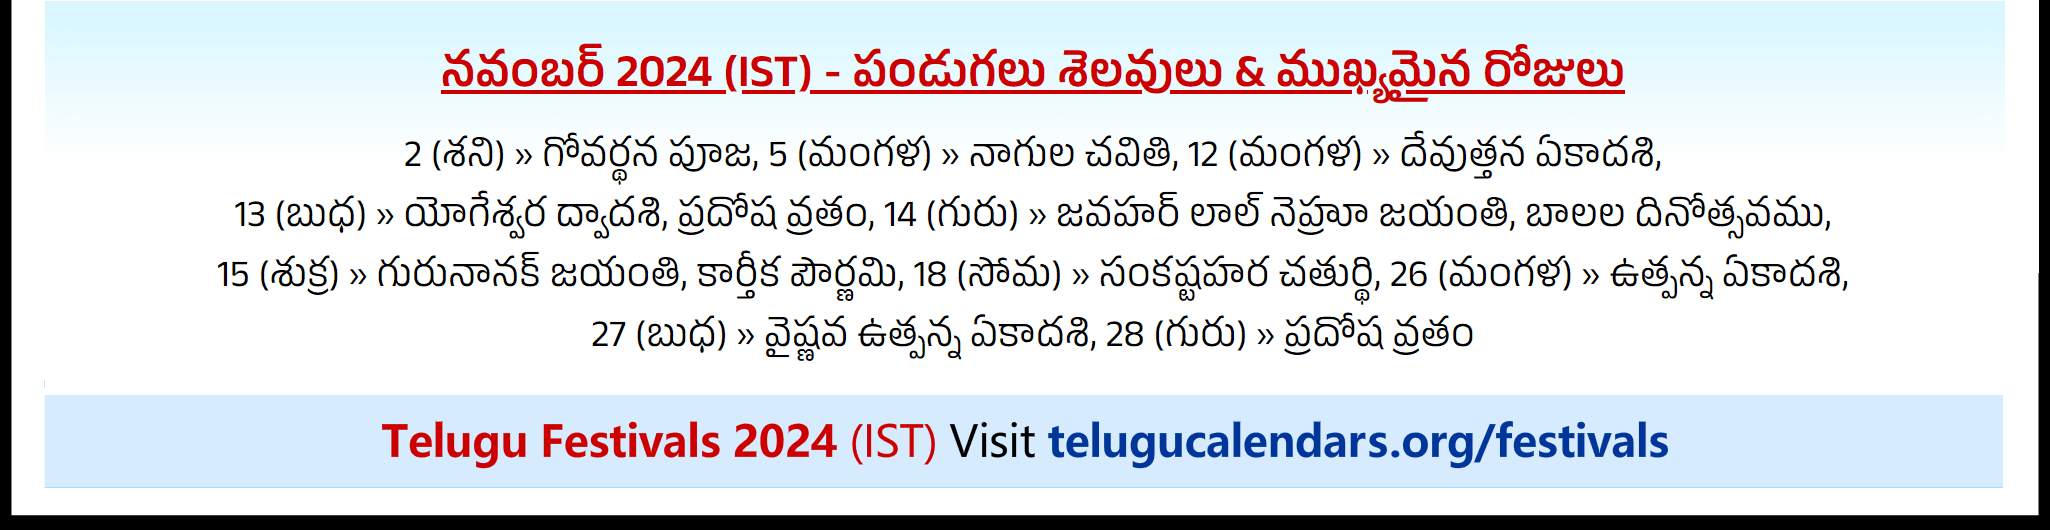 Telugu Festivals 2024 November Chicago